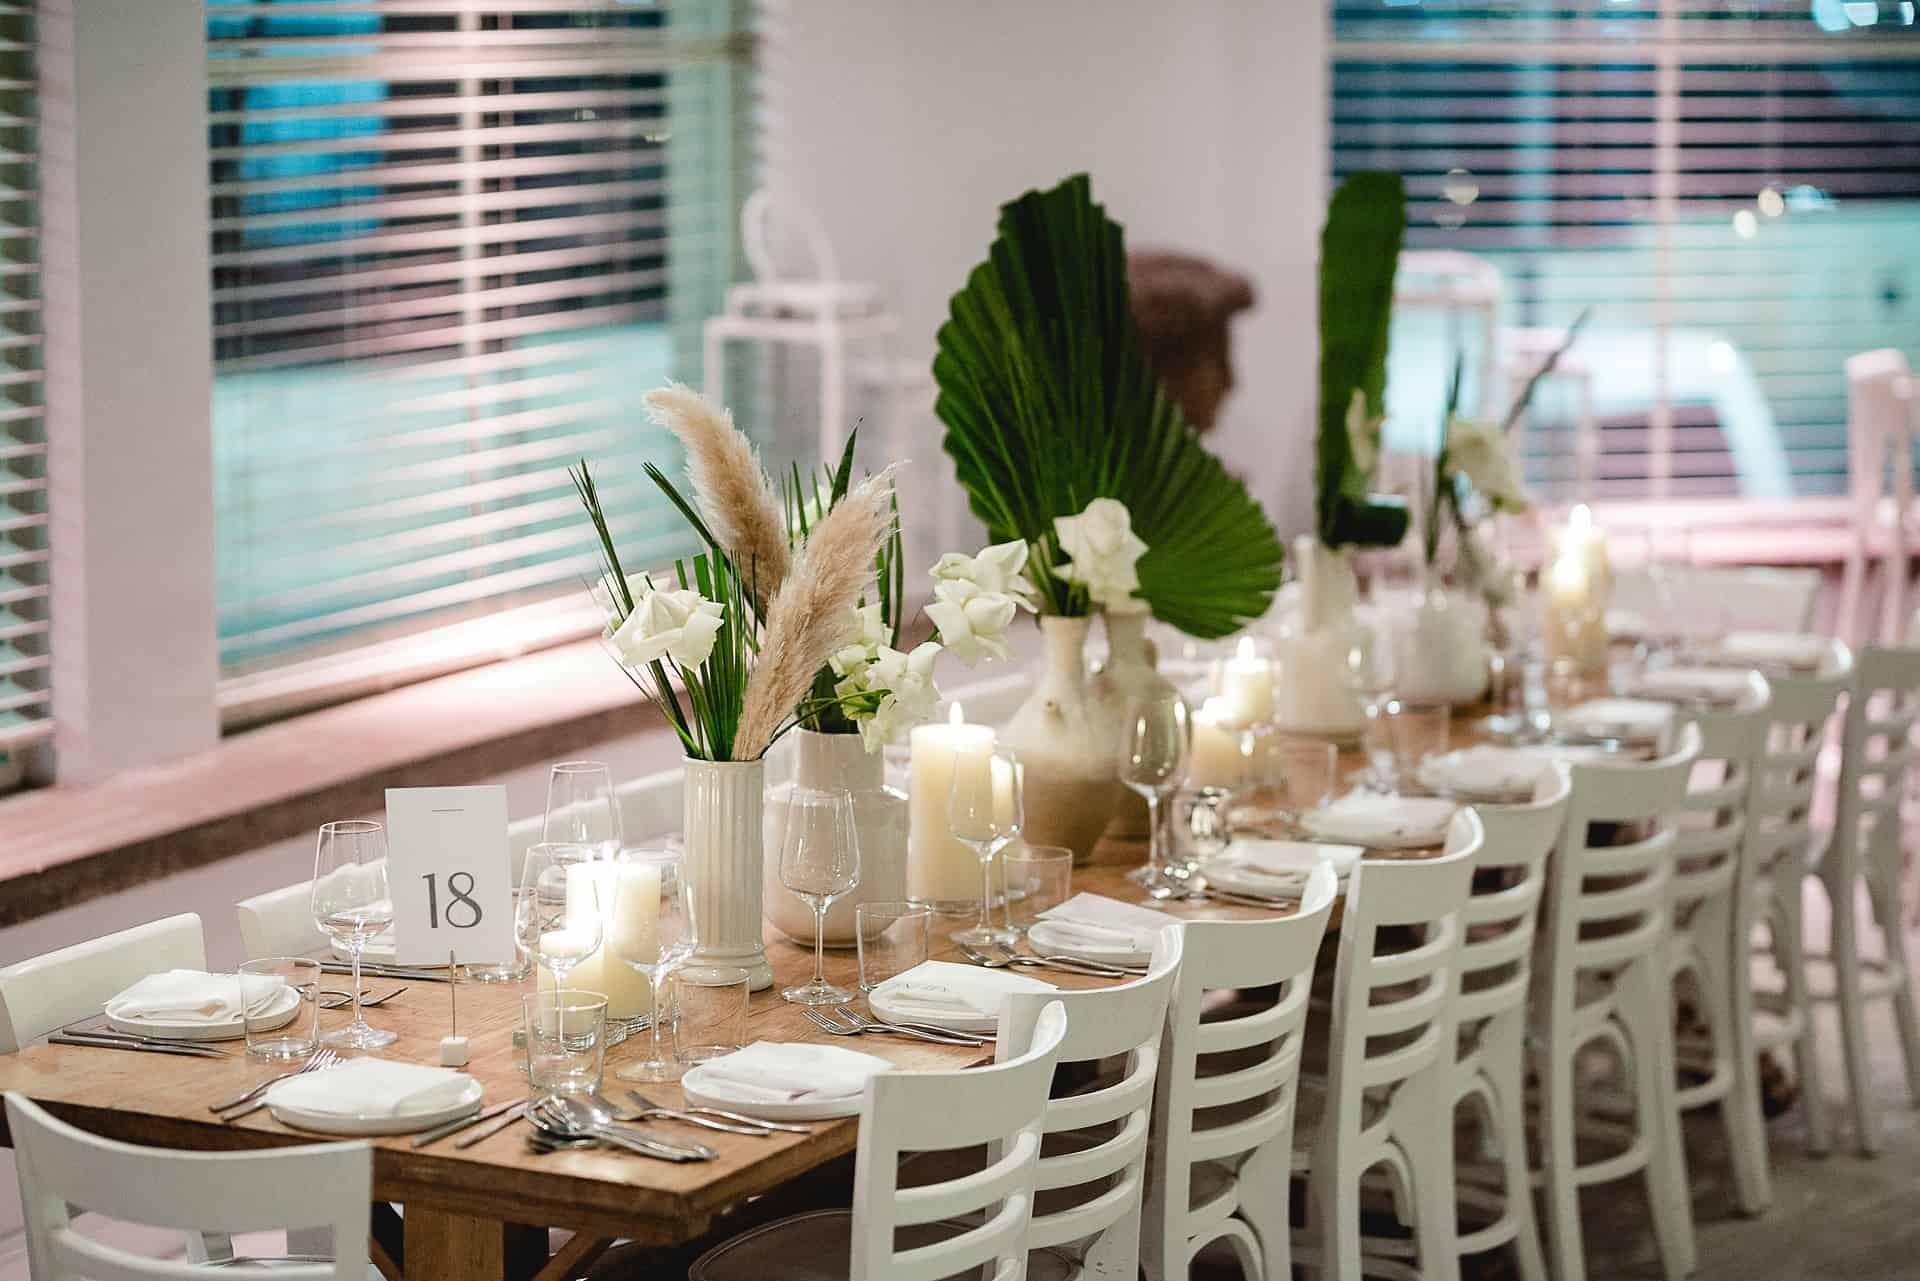 עיצוב לחתונה שולחן מעוצב לקראת האורחים שמגיעים